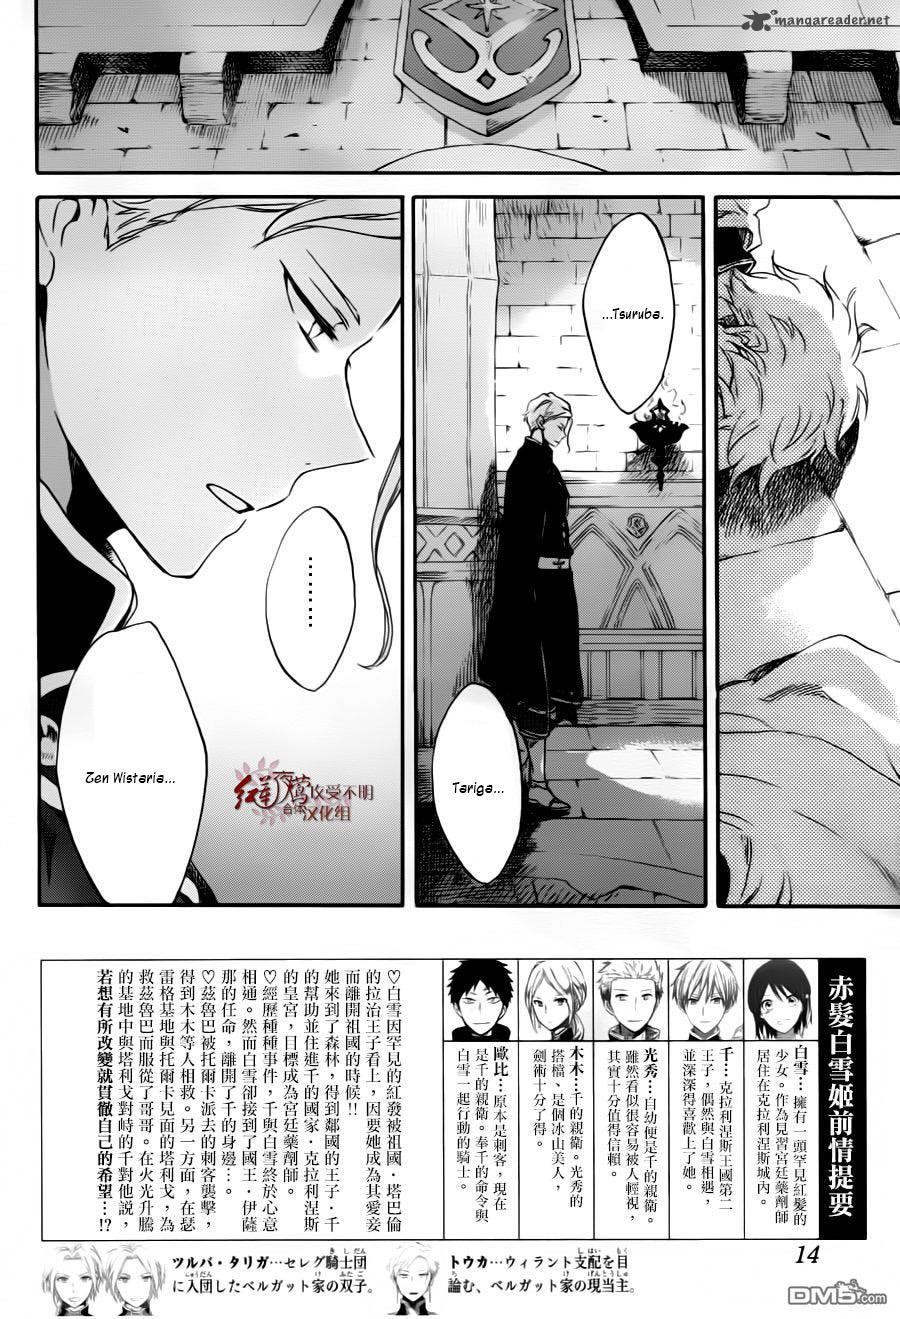 Akagami No Shirayukihime Chapter 84 Page 4